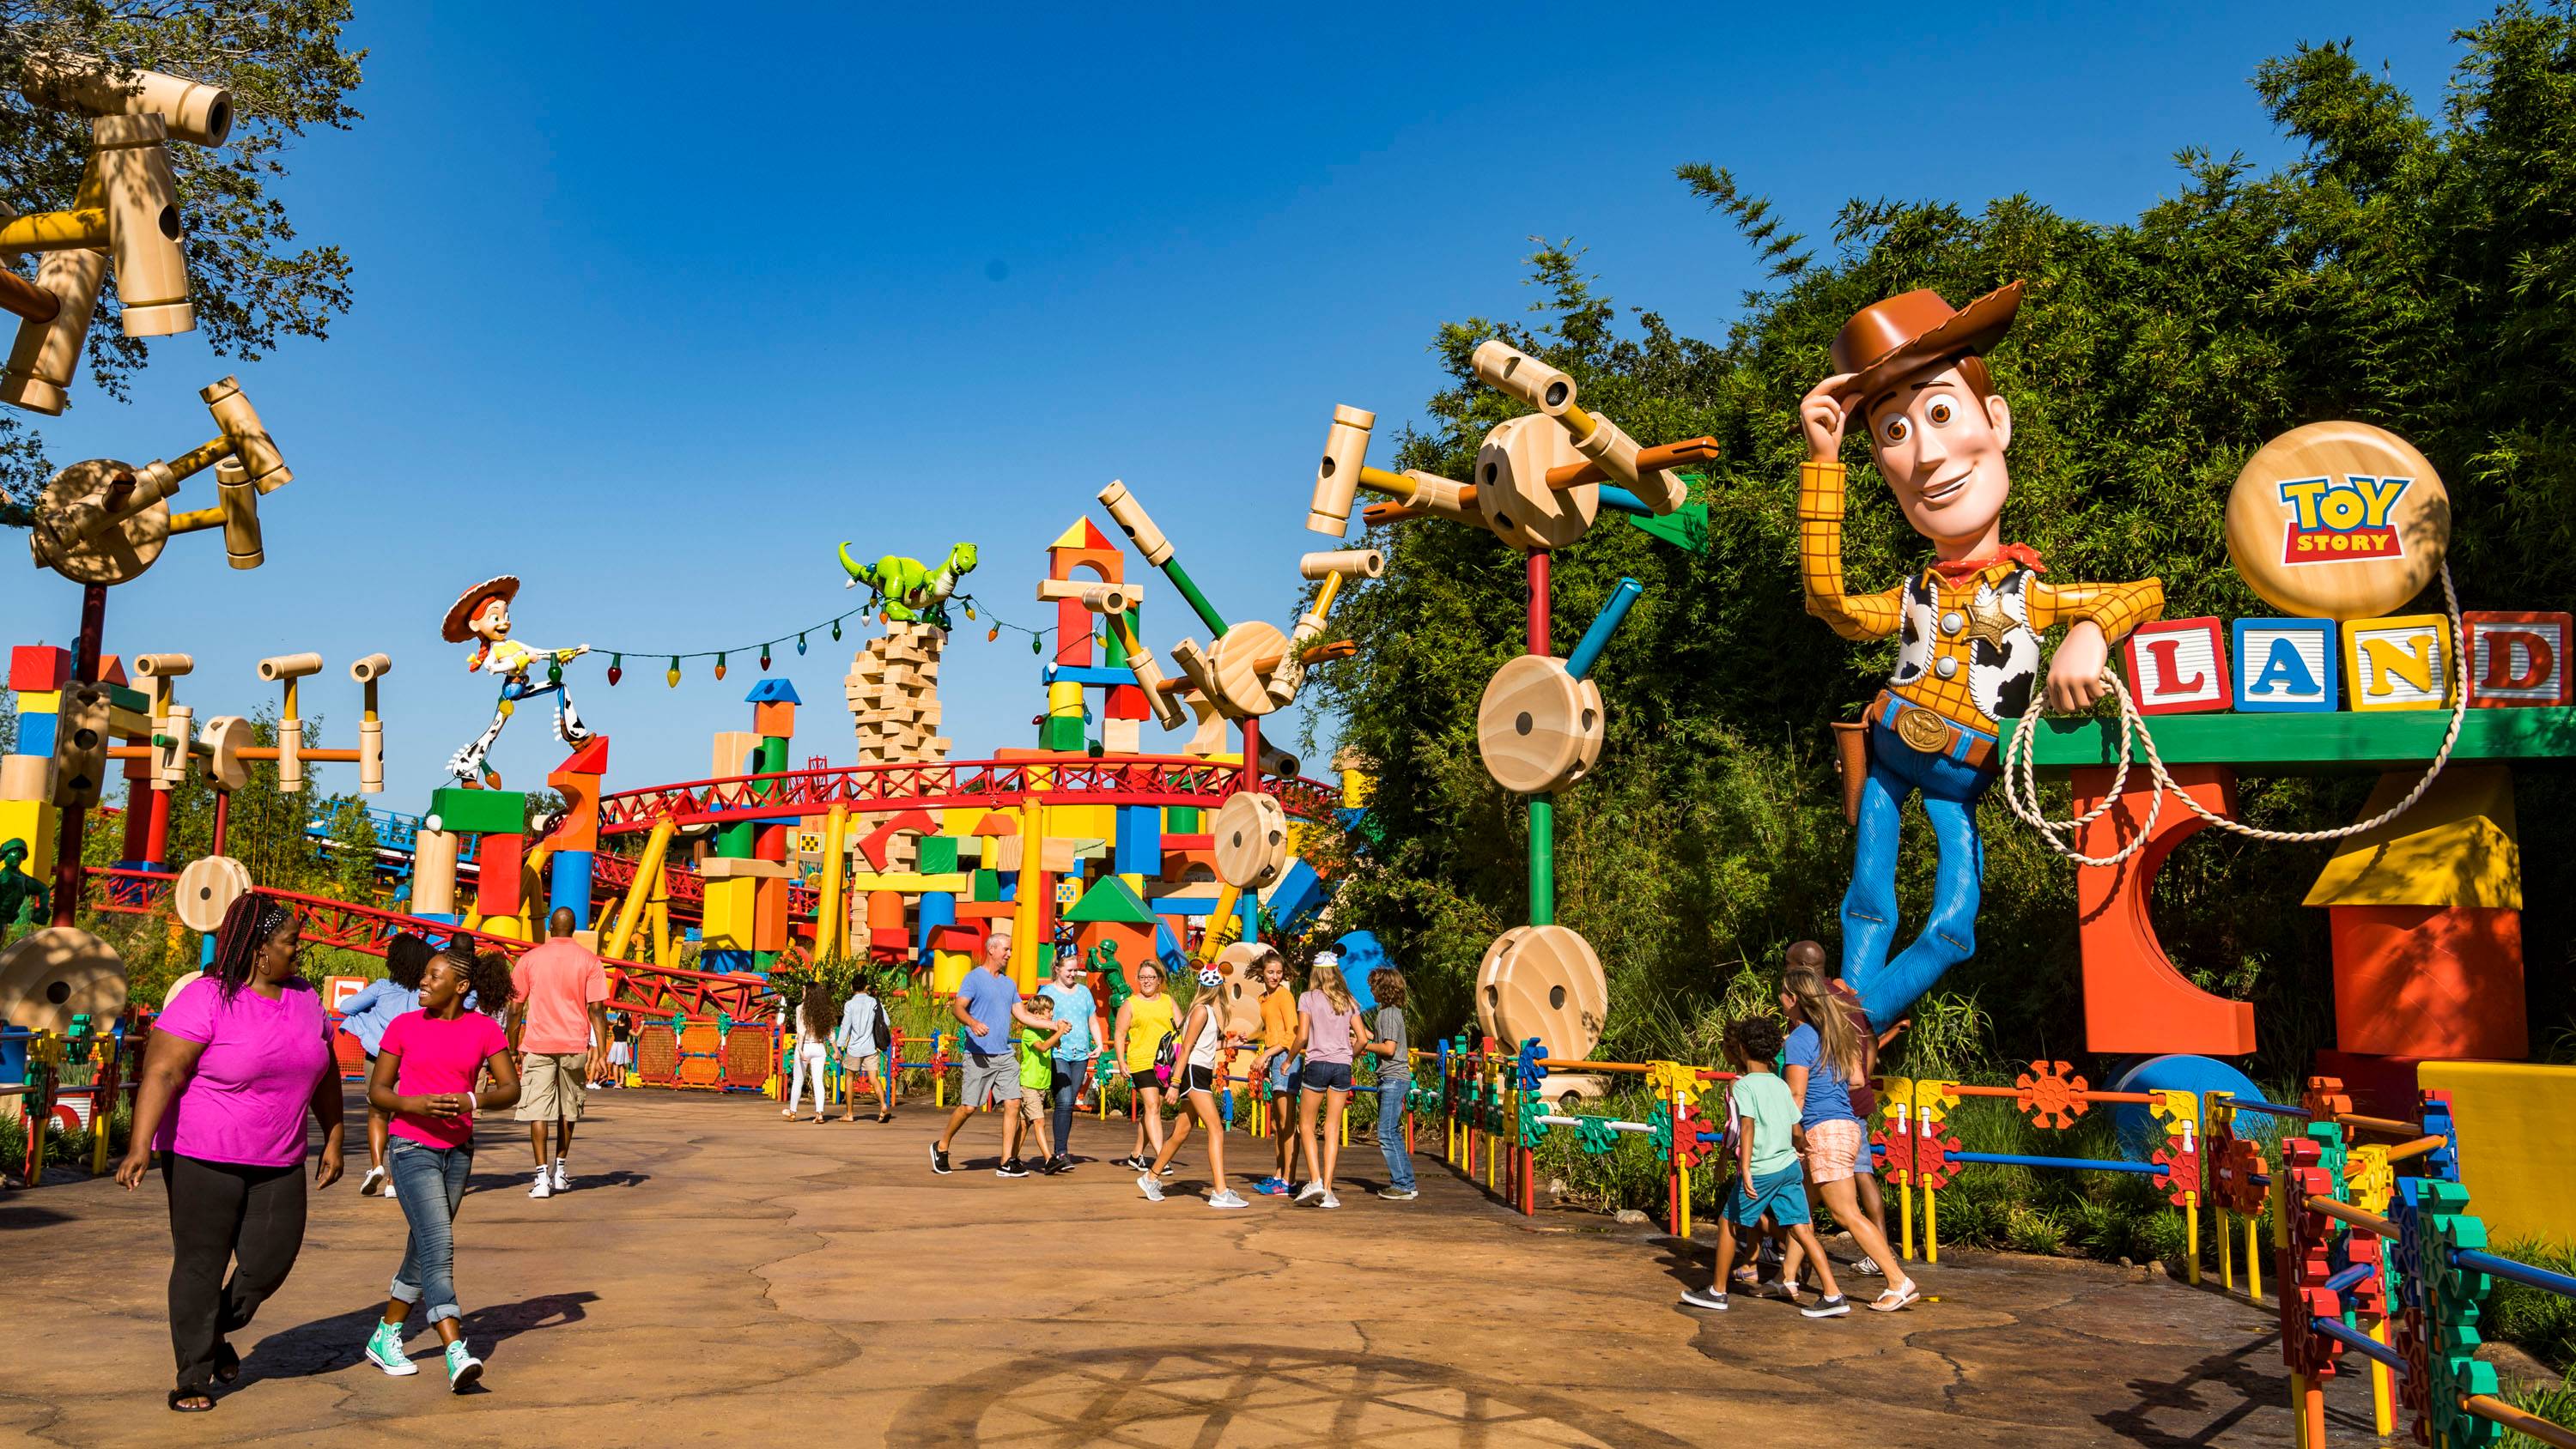 PHOTOS - Take a tour through Toy Story Land